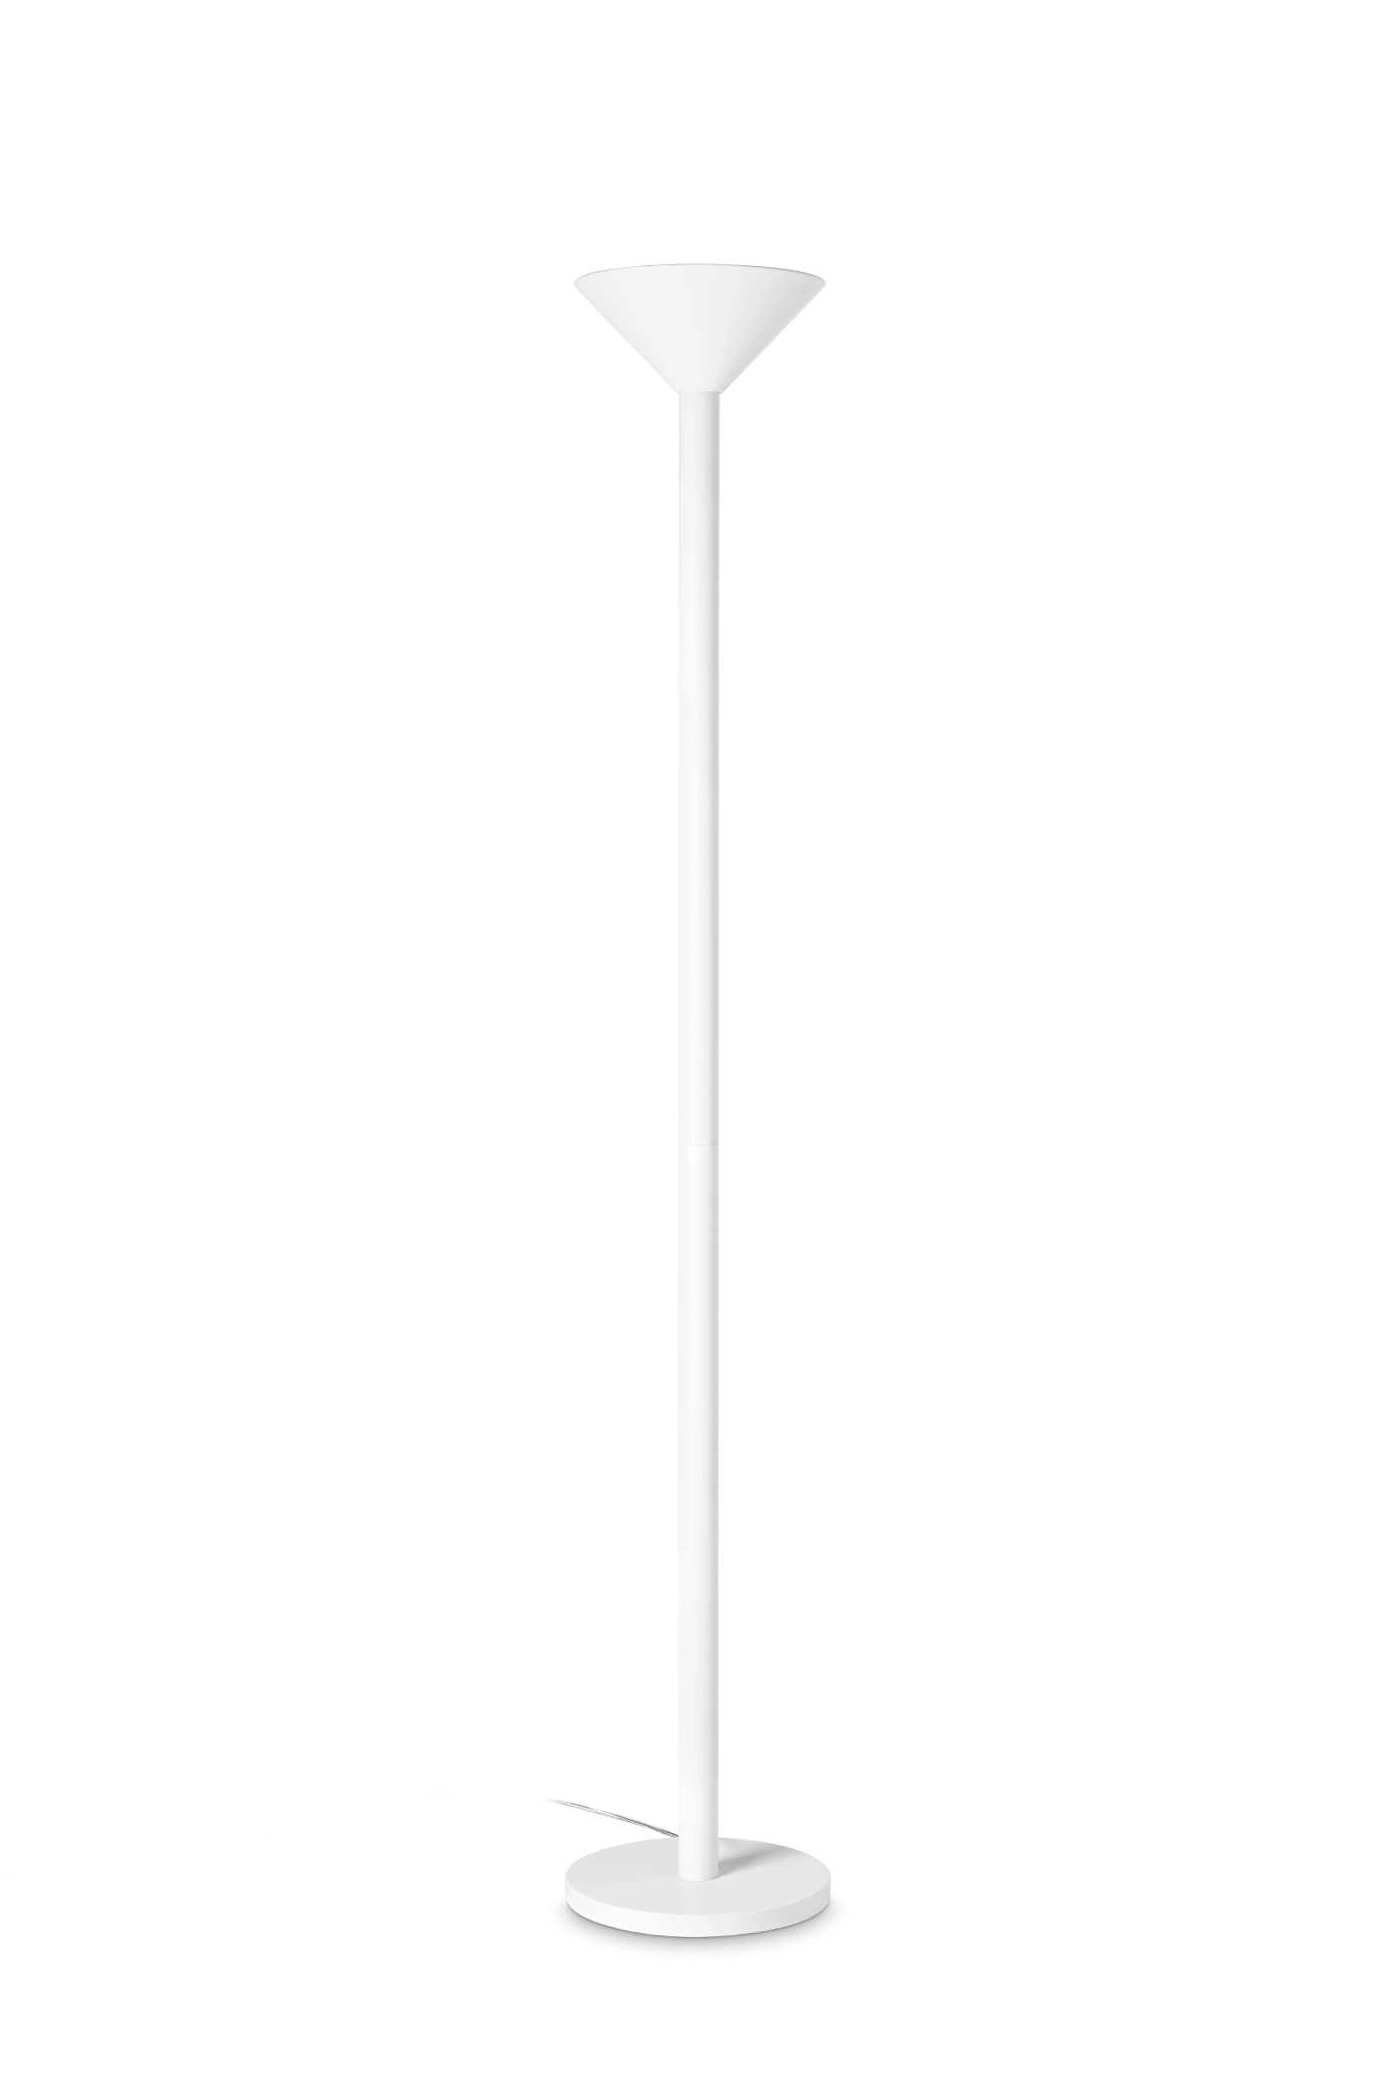   
                        
                        Торшер IDEAL LUX (Італія) 10814    
                         у стилі Хай-тек.  
                        Тип джерела світла: світлодіодна лампа, змінна.                                                                                                  фото 2